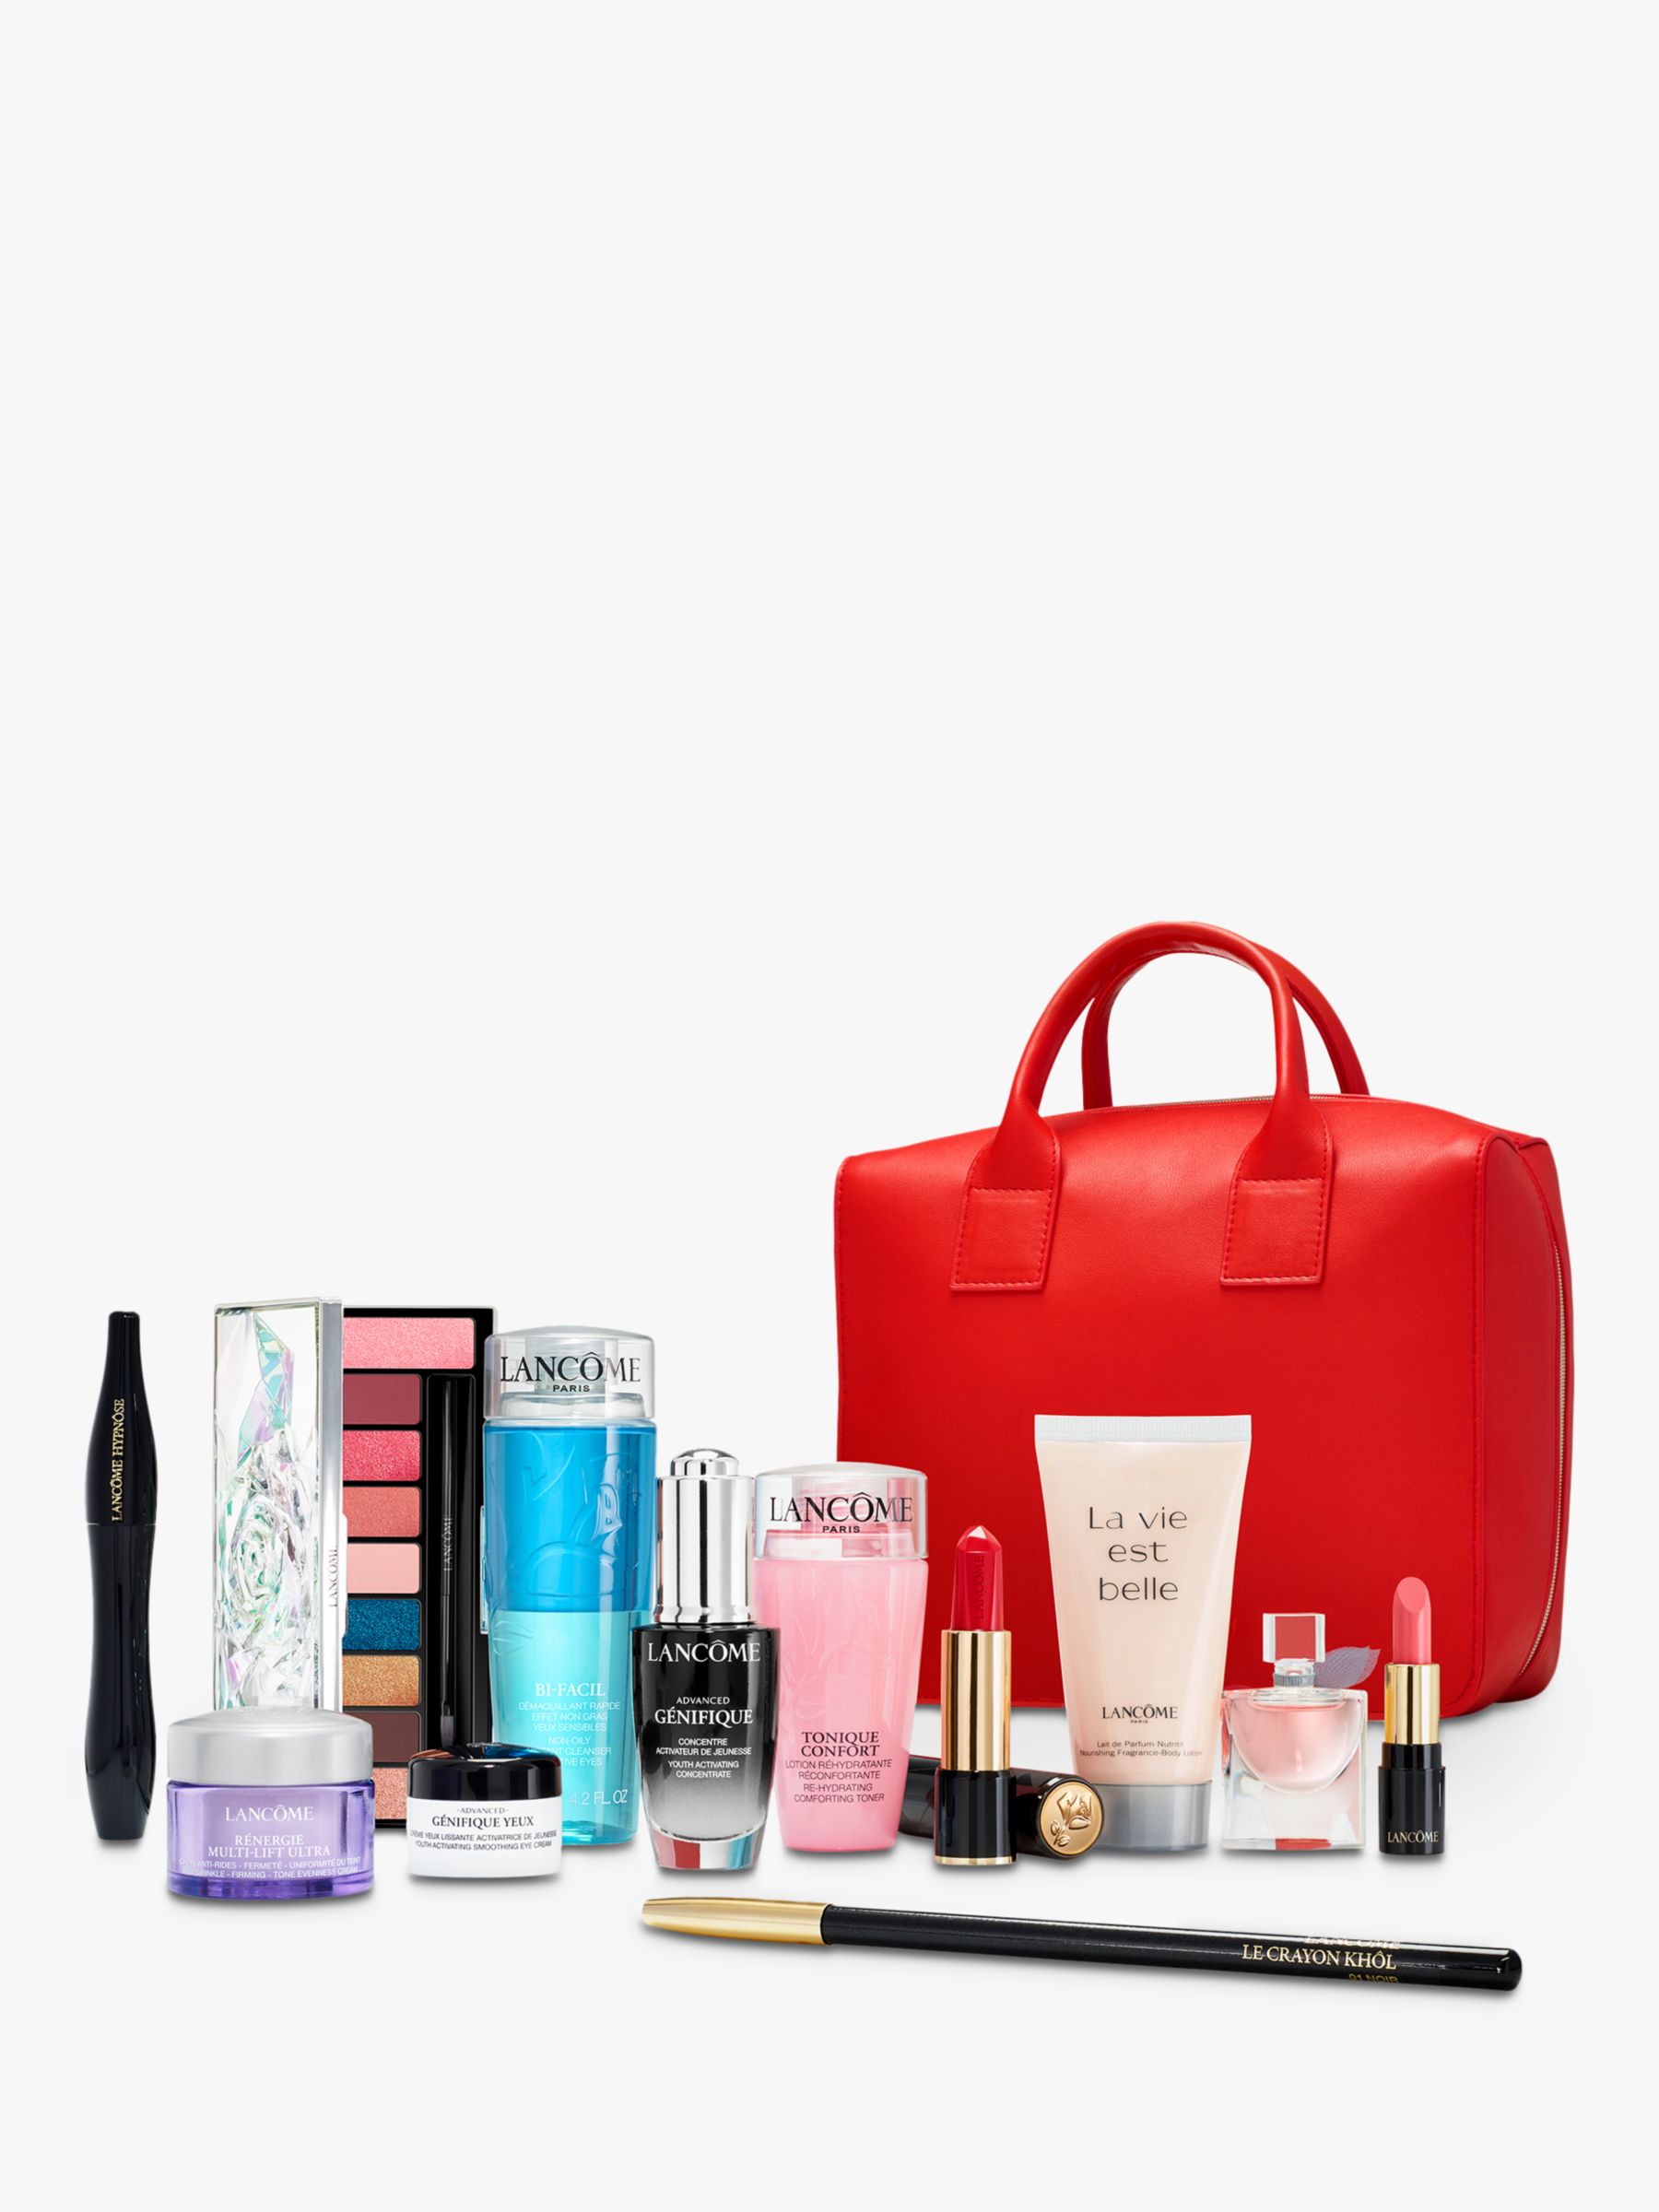 Lancôme Beauty Box Makeup Gift Set